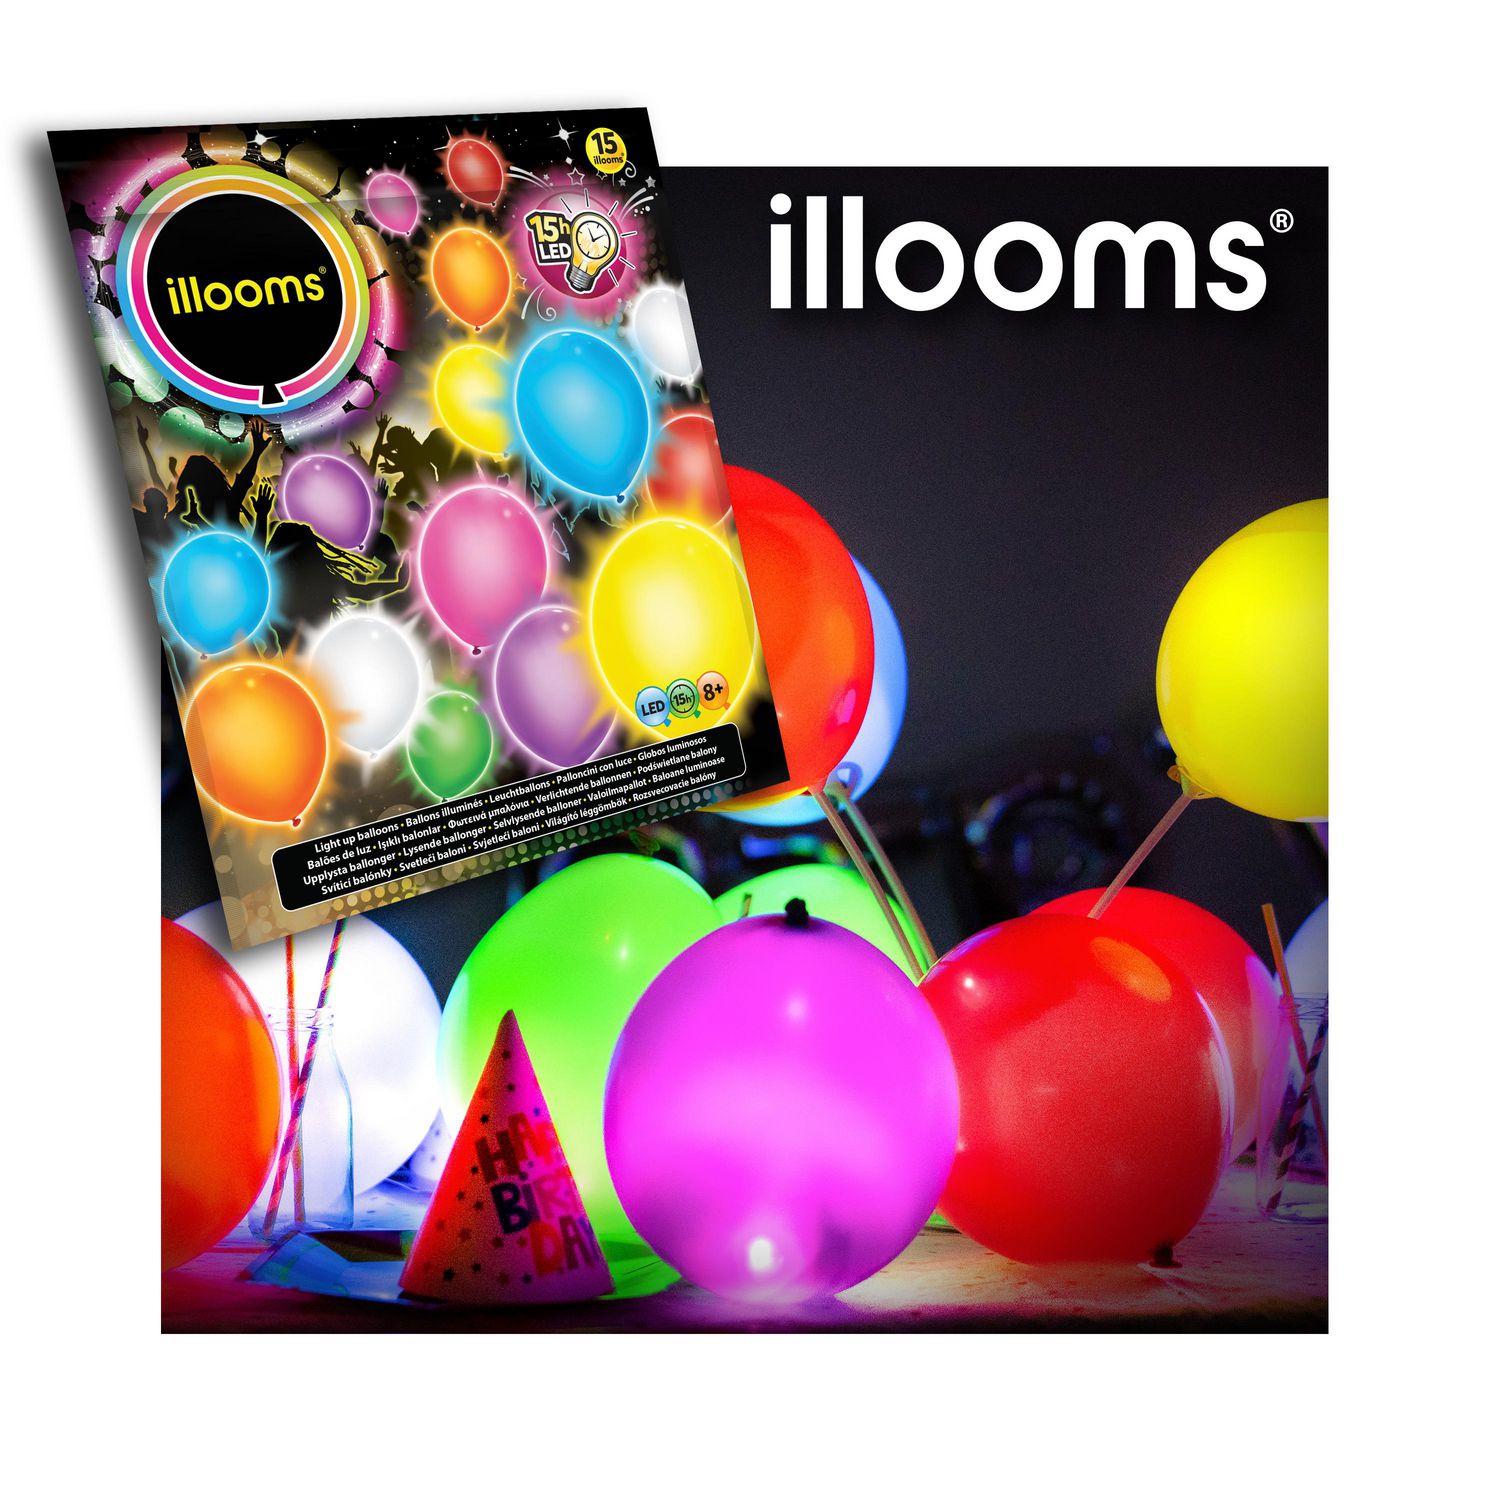 5 Ballons LED Joyeux anniversaire Illooms® : Deguise-toi, achat de